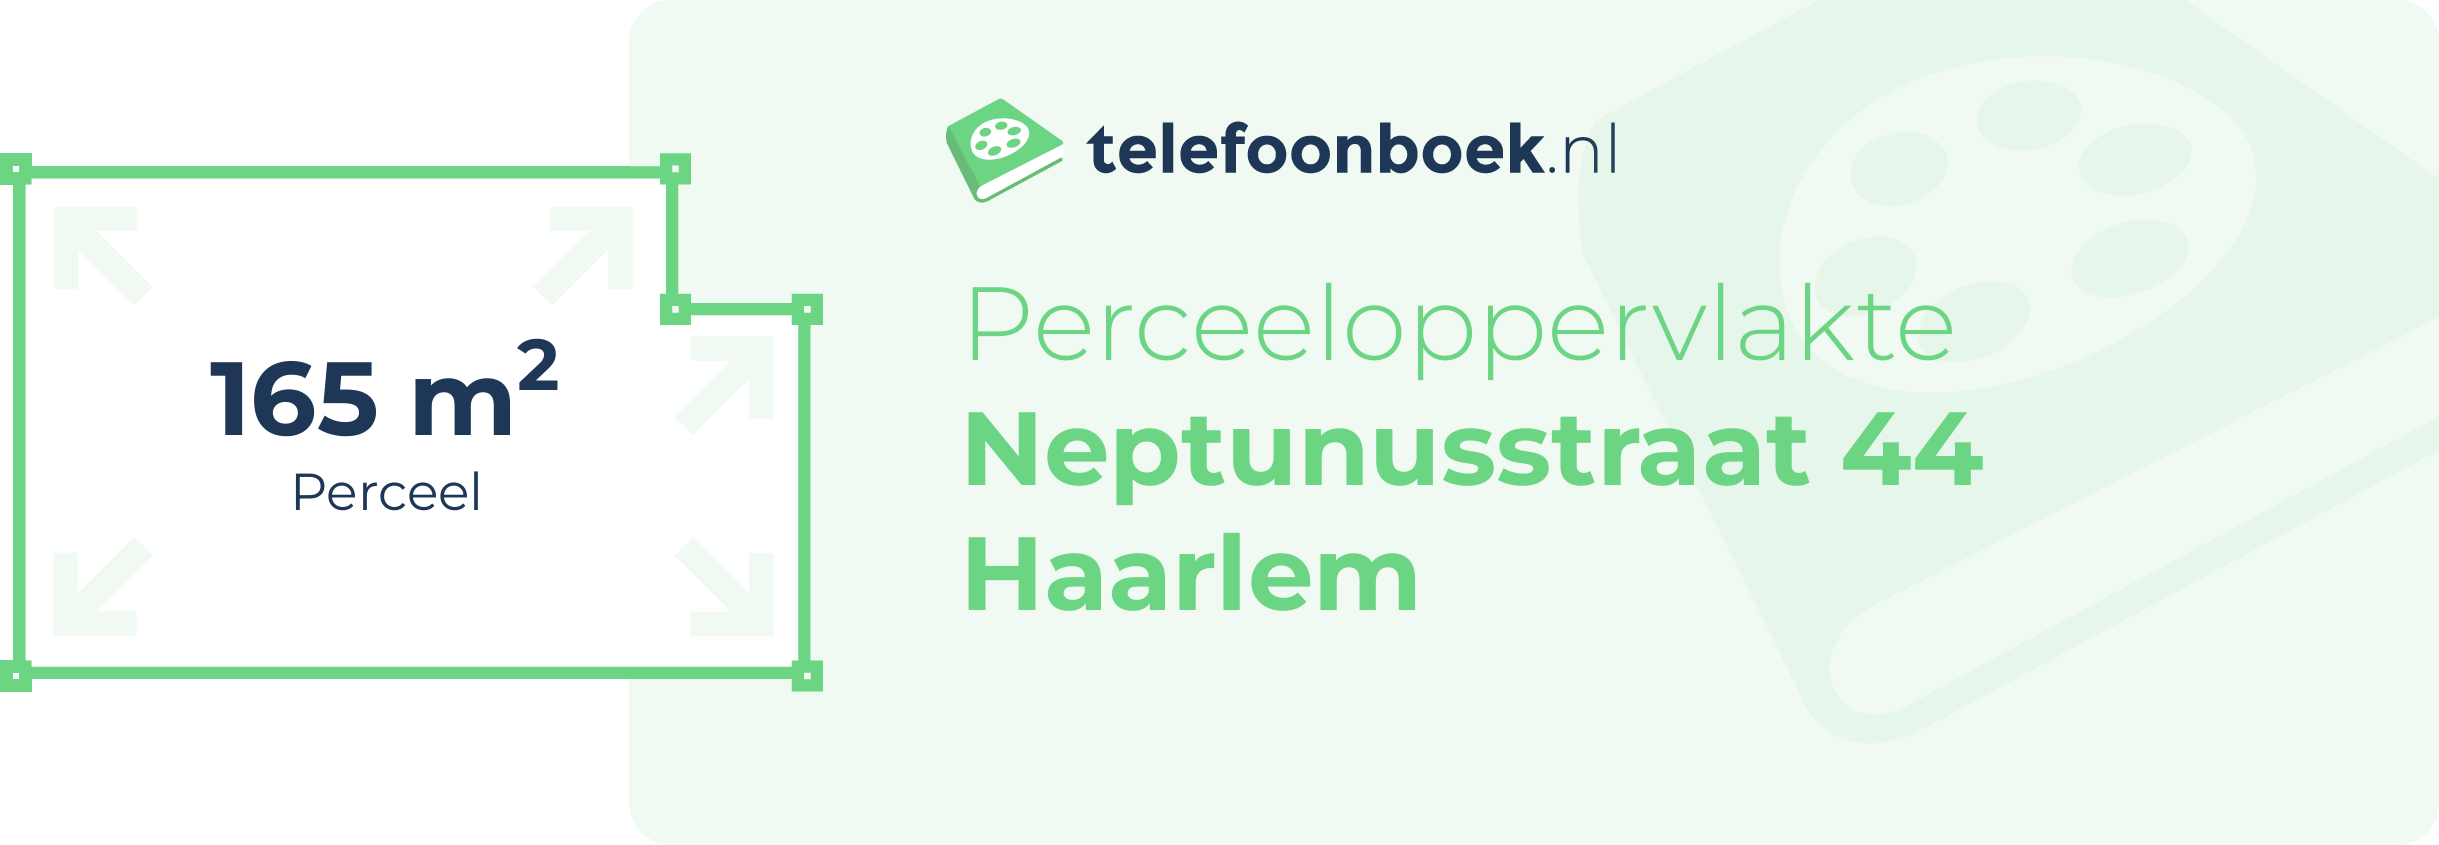 Perceeloppervlakte Neptunusstraat 44 Haarlem